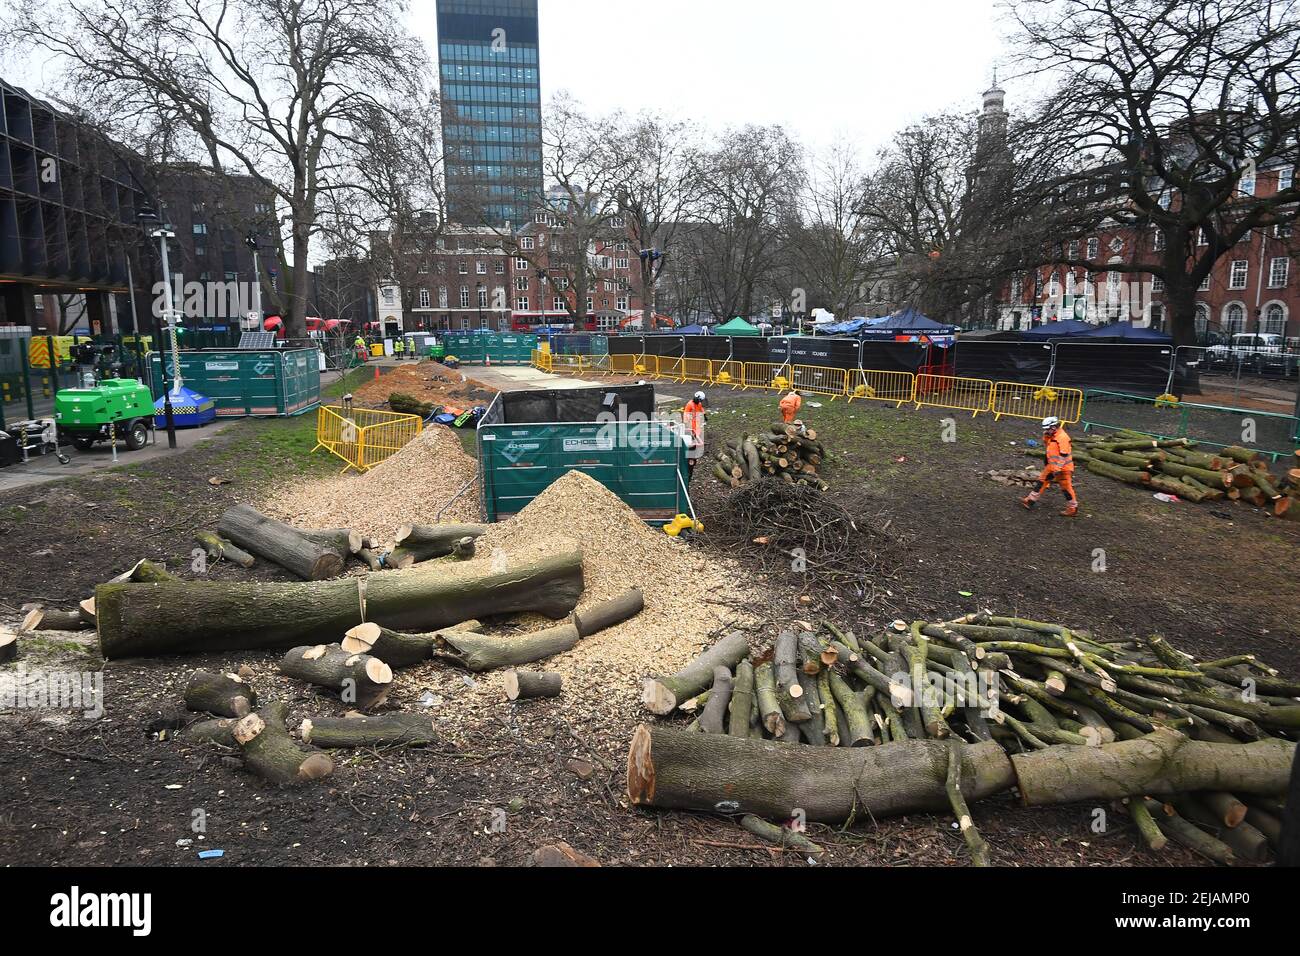 Los trabajadores despejan los árboles talados junto al campamento anti-HS2 en Euston Square Gardens, Londres. Fecha del cuadro: Lunes 22 de febrero de 2021. Foto de stock